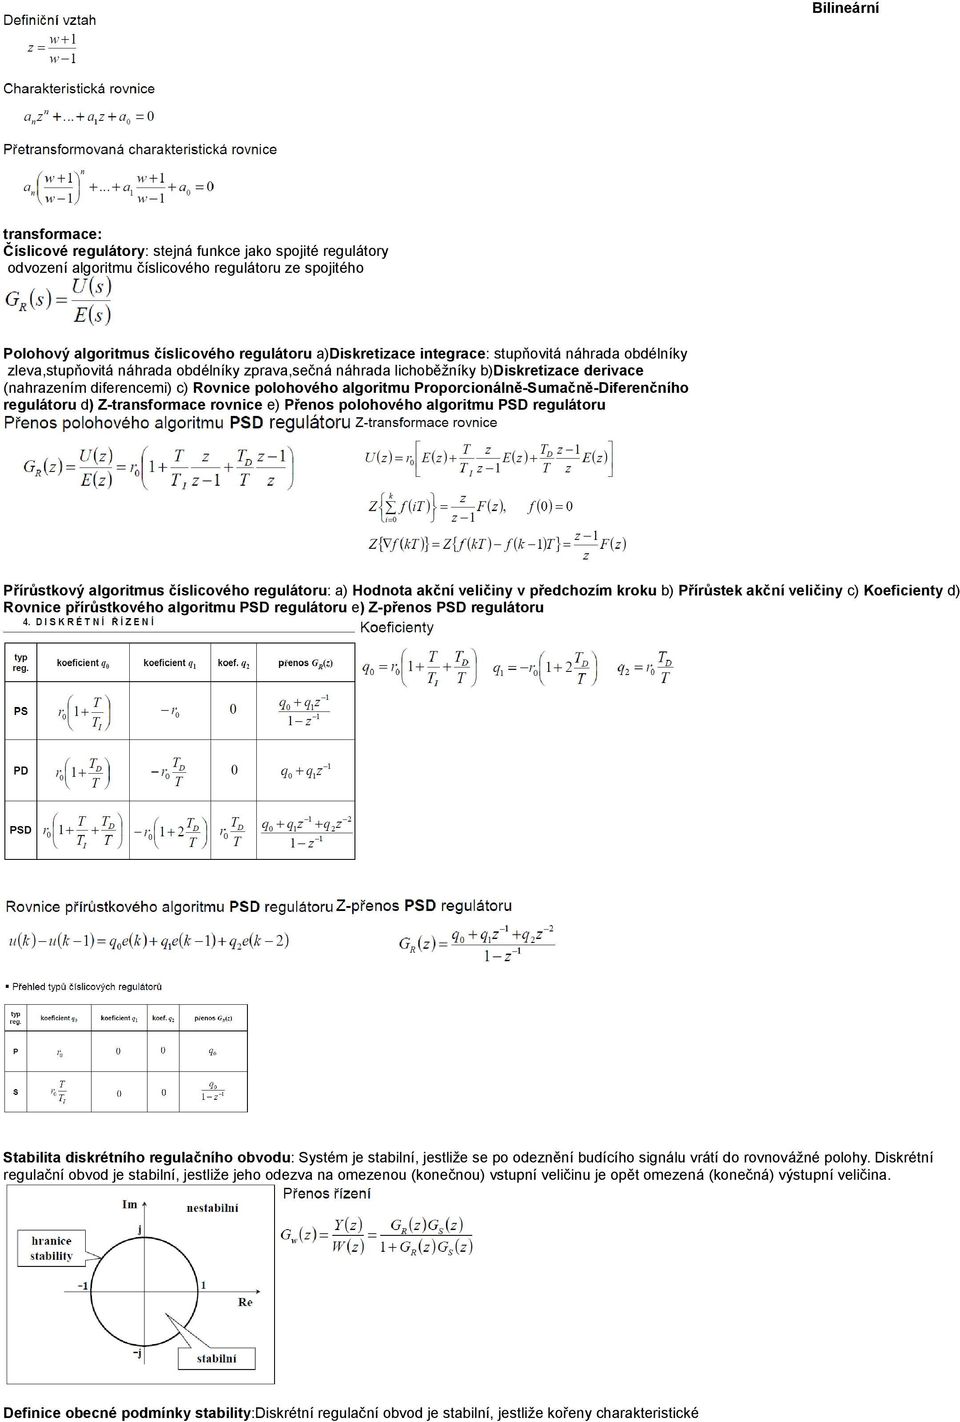 Proporcionálně-Sumačně-Diferenčního regulátoru d) Z-transformace rovnice e) Přenos polohového algoritmu PSD regulátoru Přírůstkový algoritmus číslicového regulátoru: a) Hodnota akční veličiny v